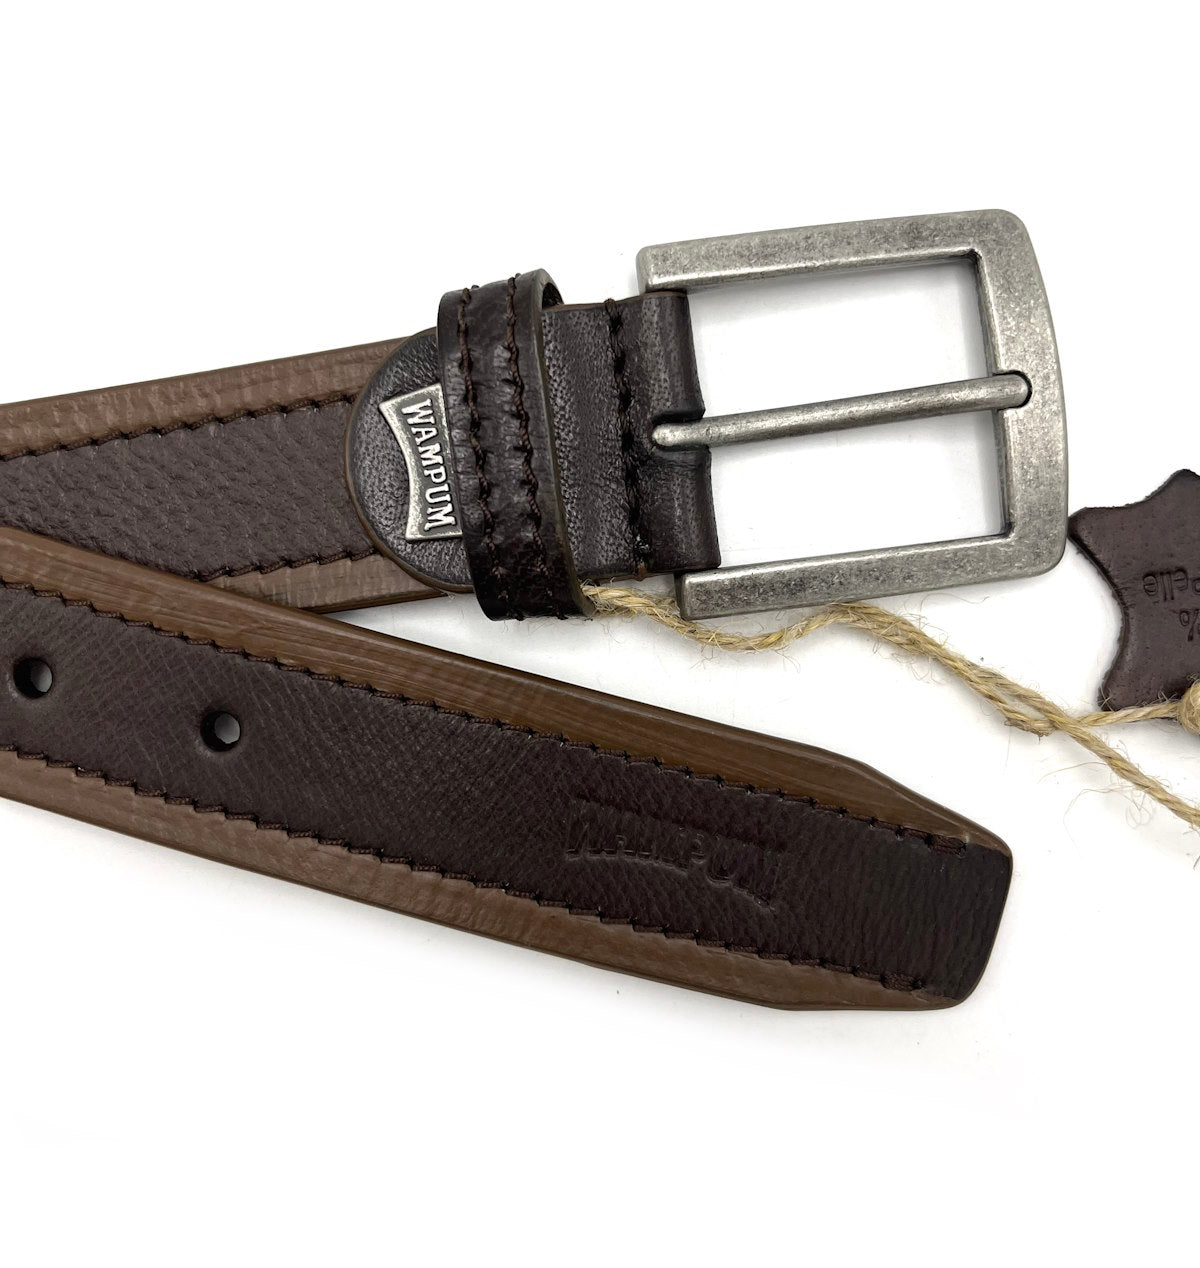 Genuine leather belt, Brand Wampum, art. IDK502/35